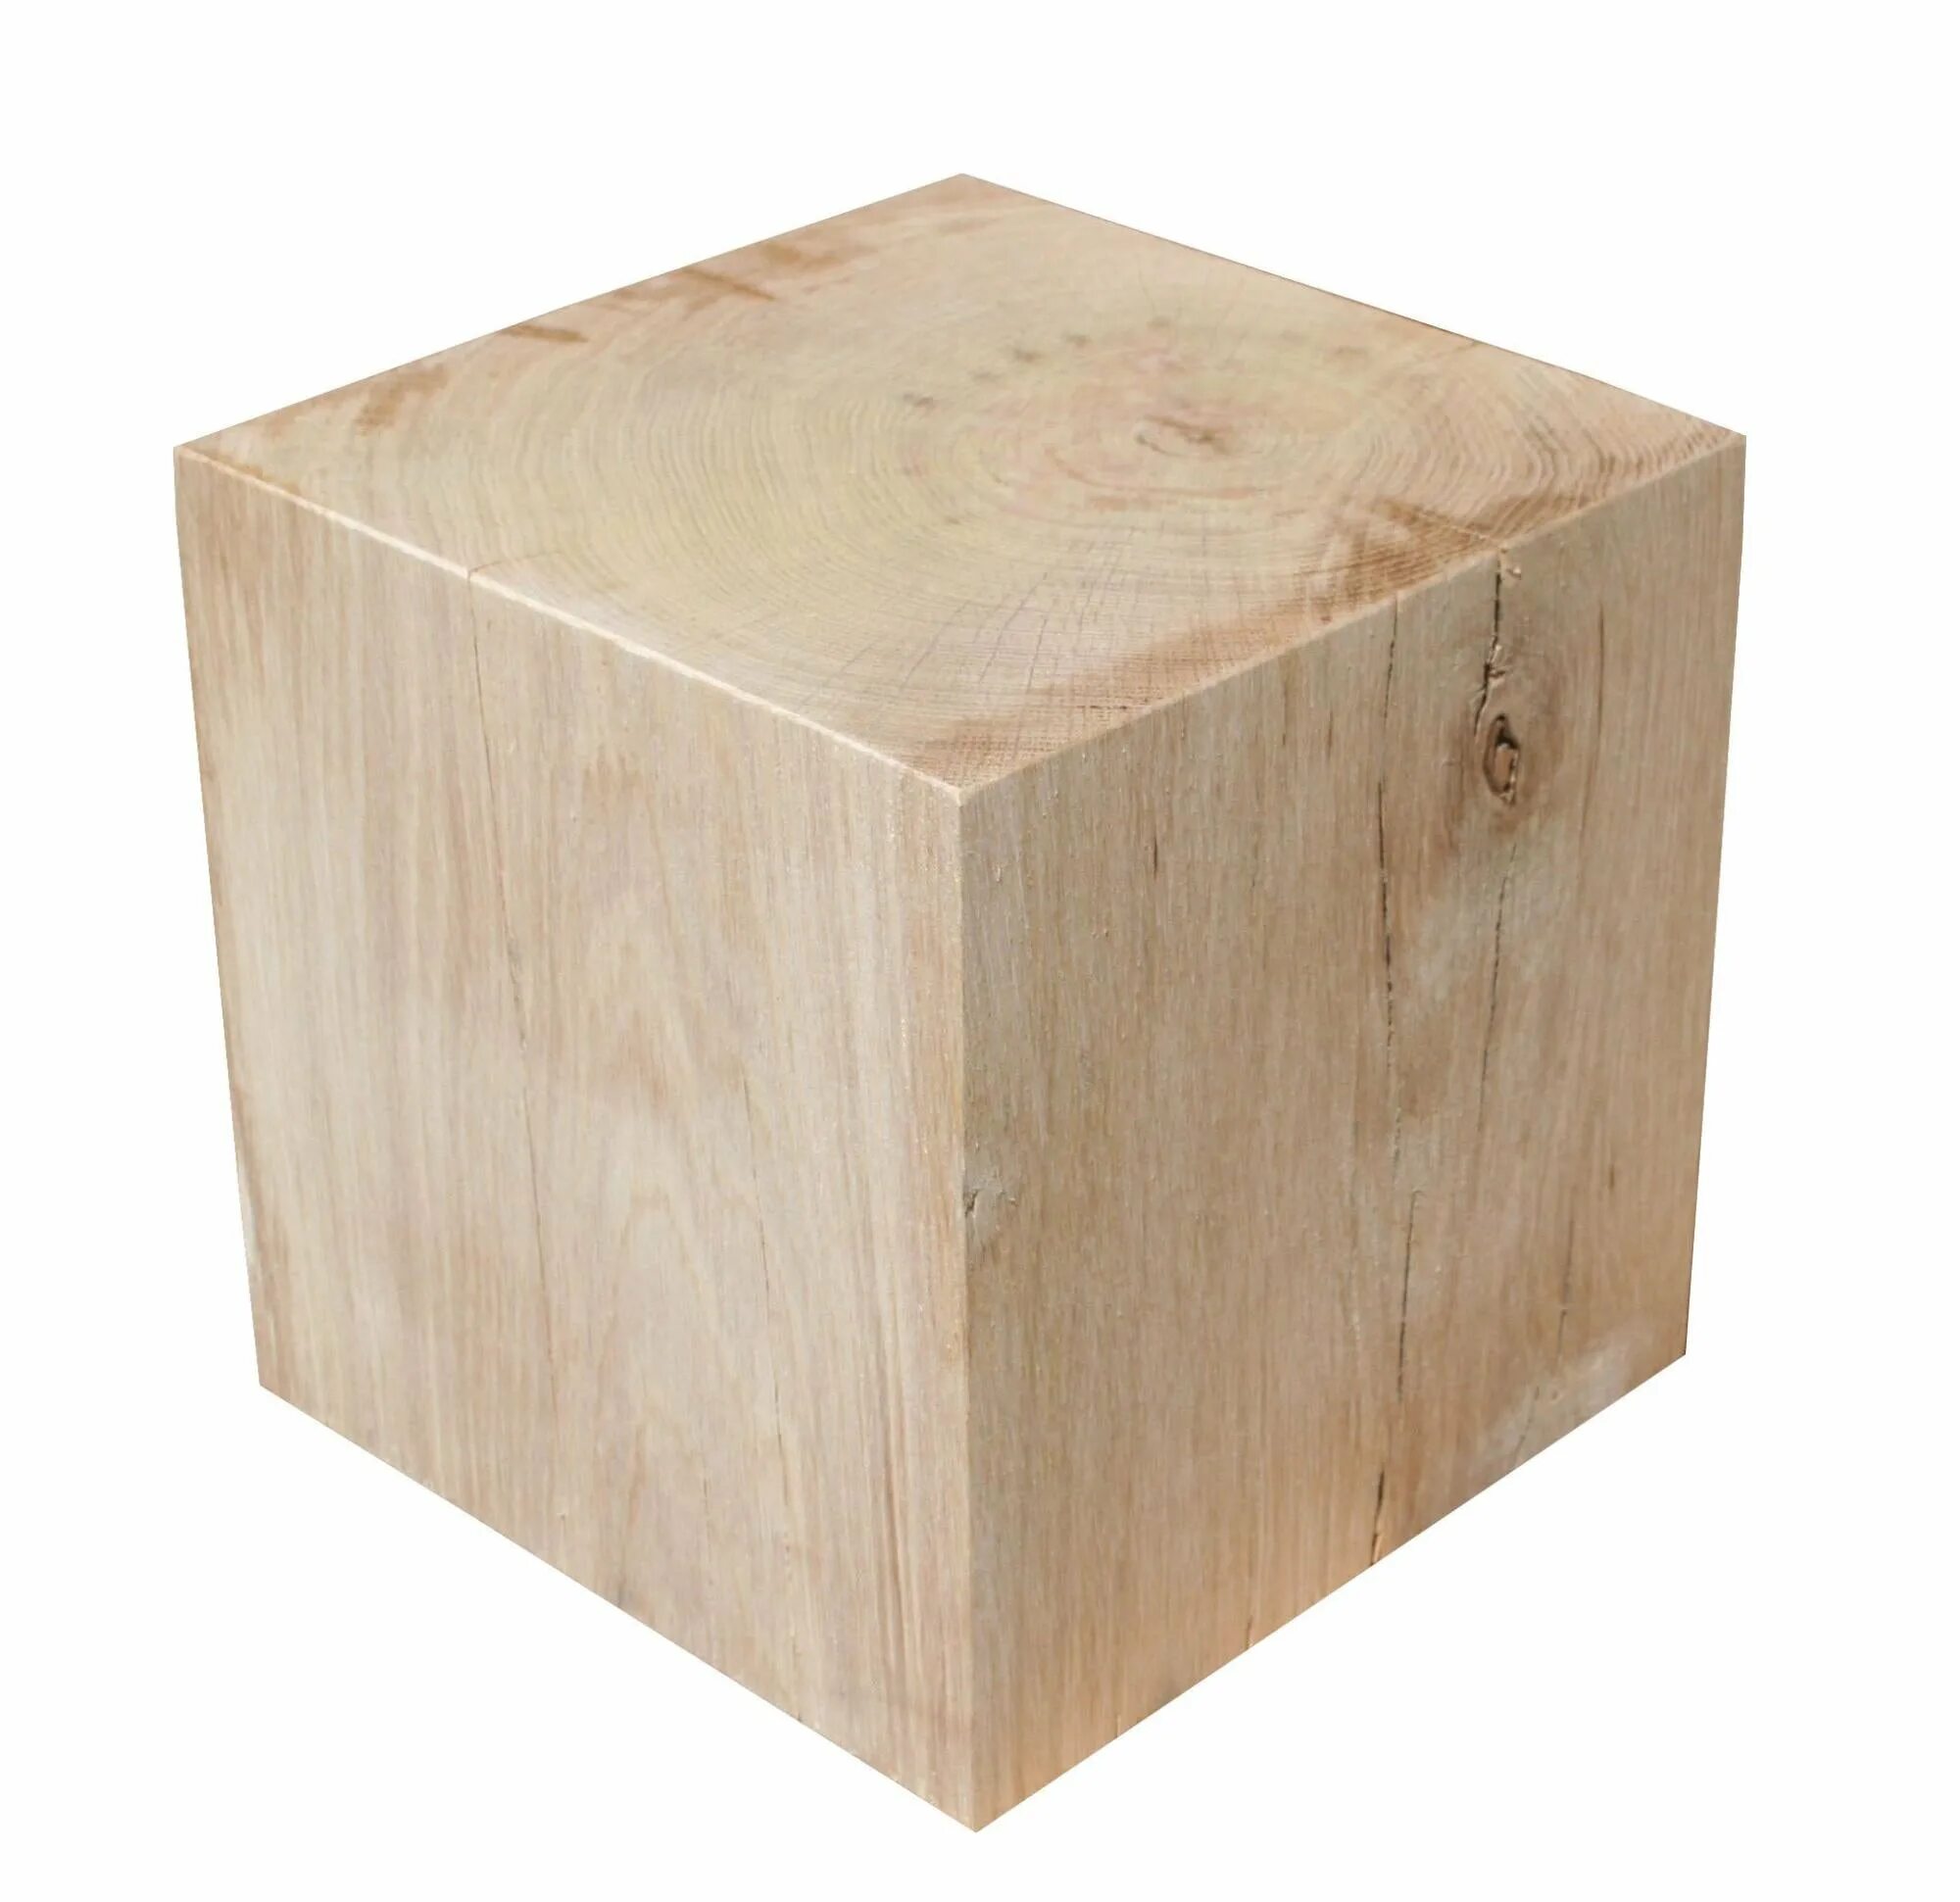 Леруа мерлен куплю картон. Куб Леруа Мерлен 3х4. Ящик деревянный Леруа Мерлен. Деревянный ящик из Леруа Мерлен. Коробки Леруа.